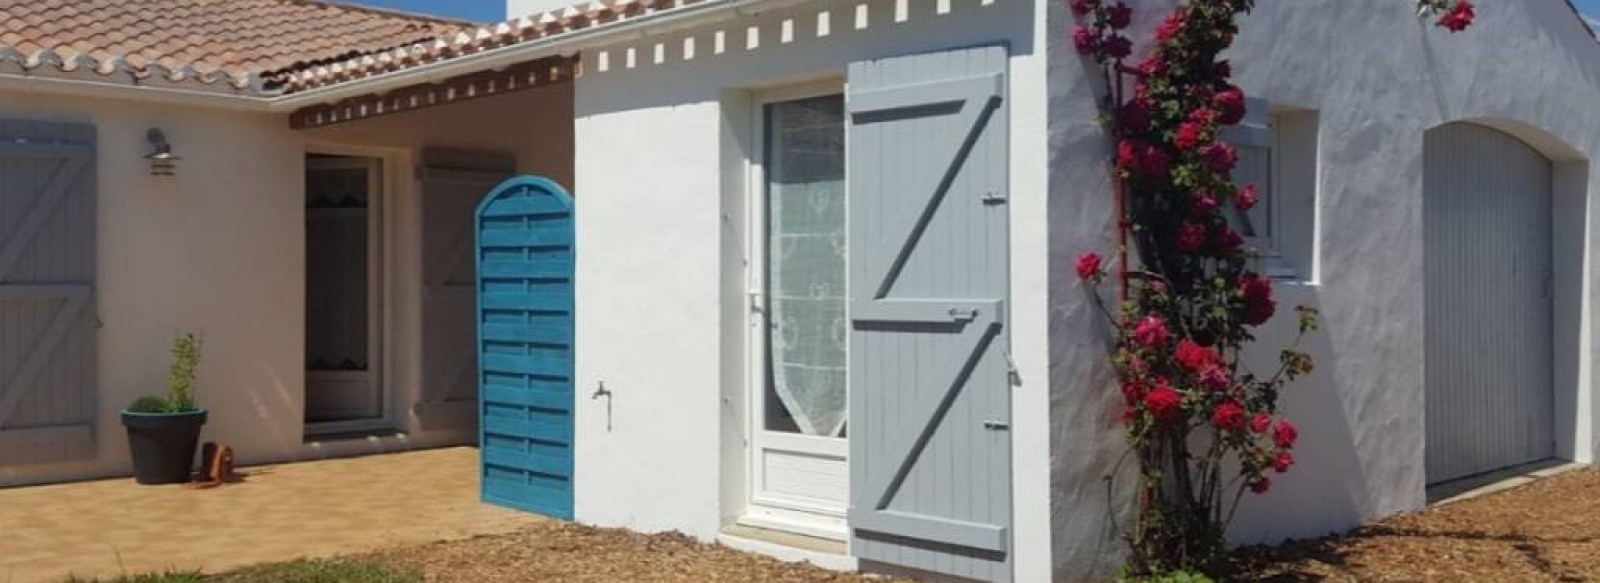 Charmante maison de vacances idealement situee dans Noirmoutier en l'Ile